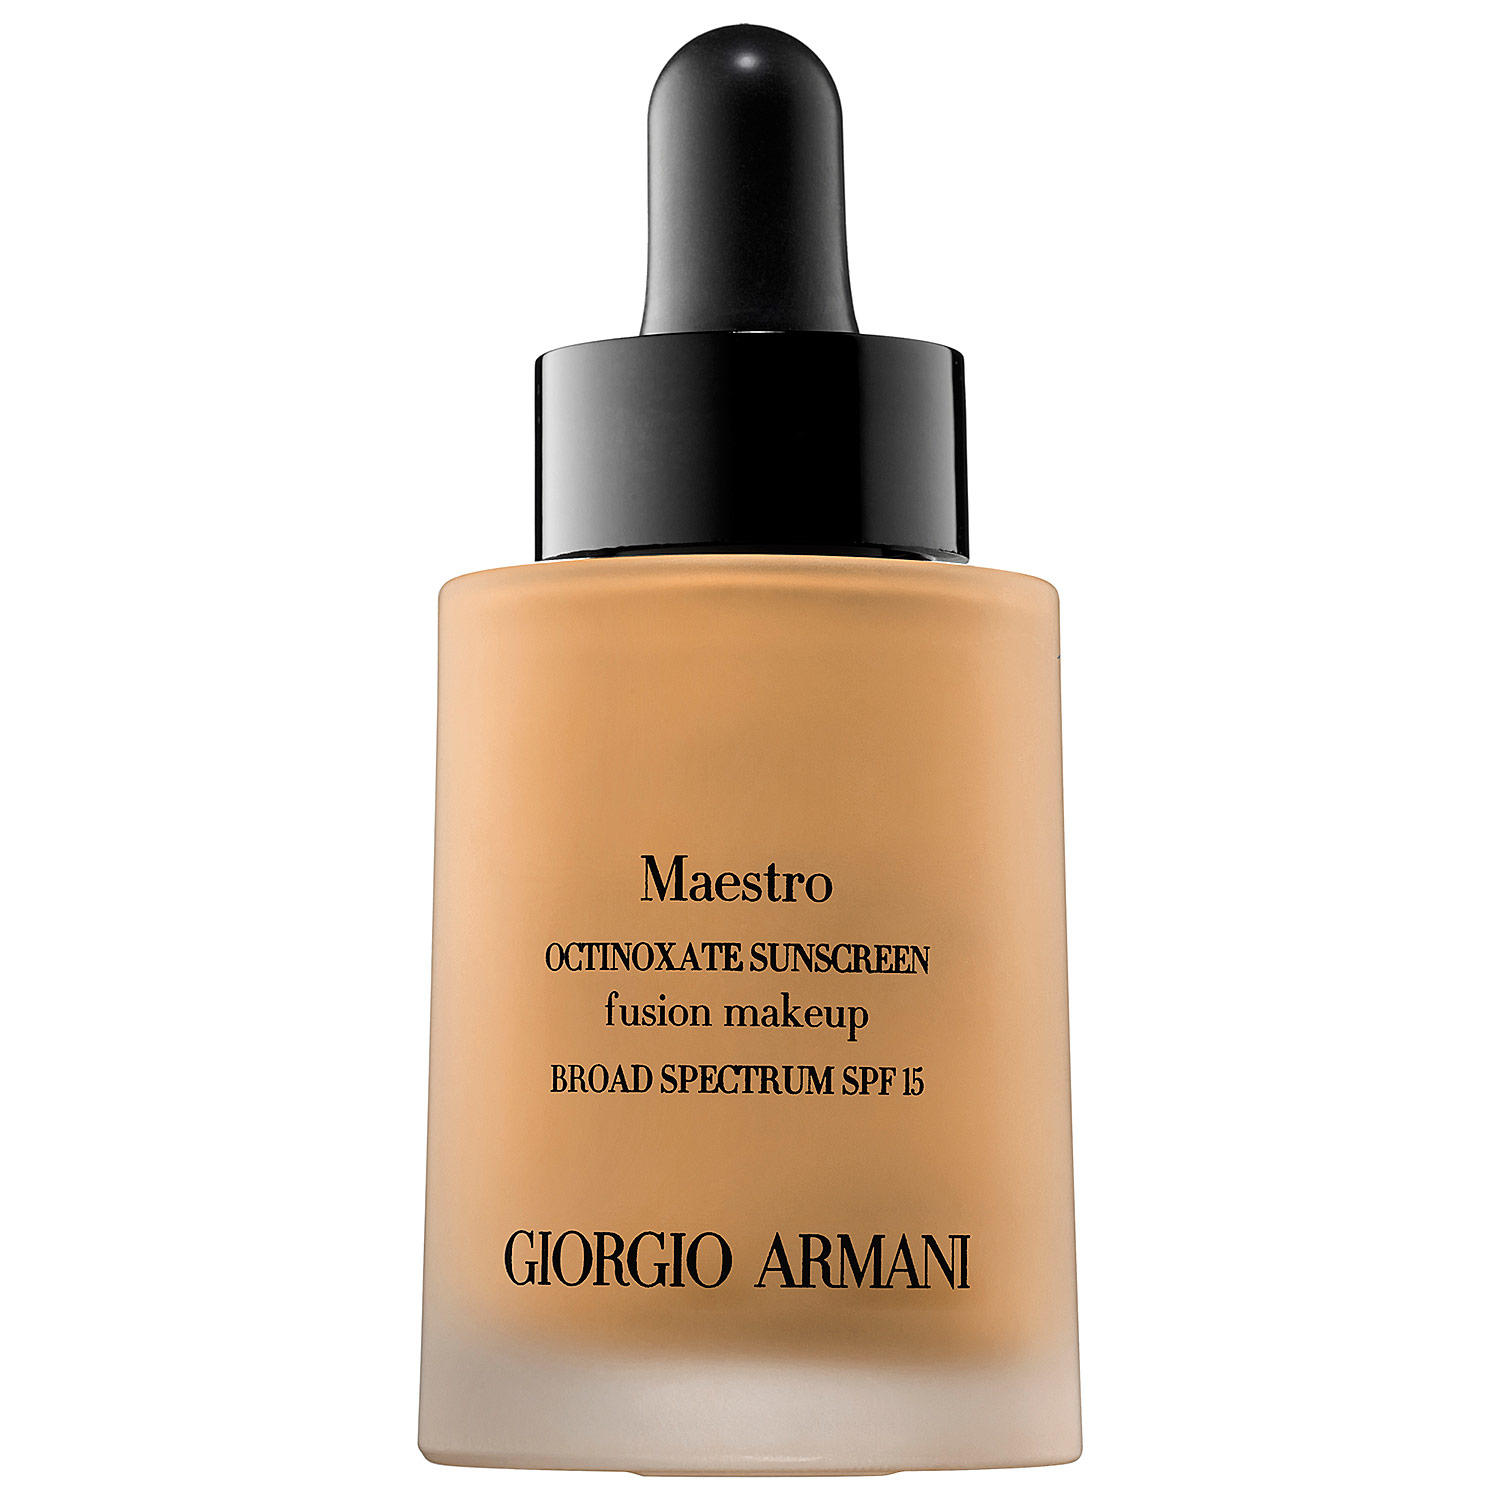 Giorgio Armani Maestro Fusion Makeup 4.5 